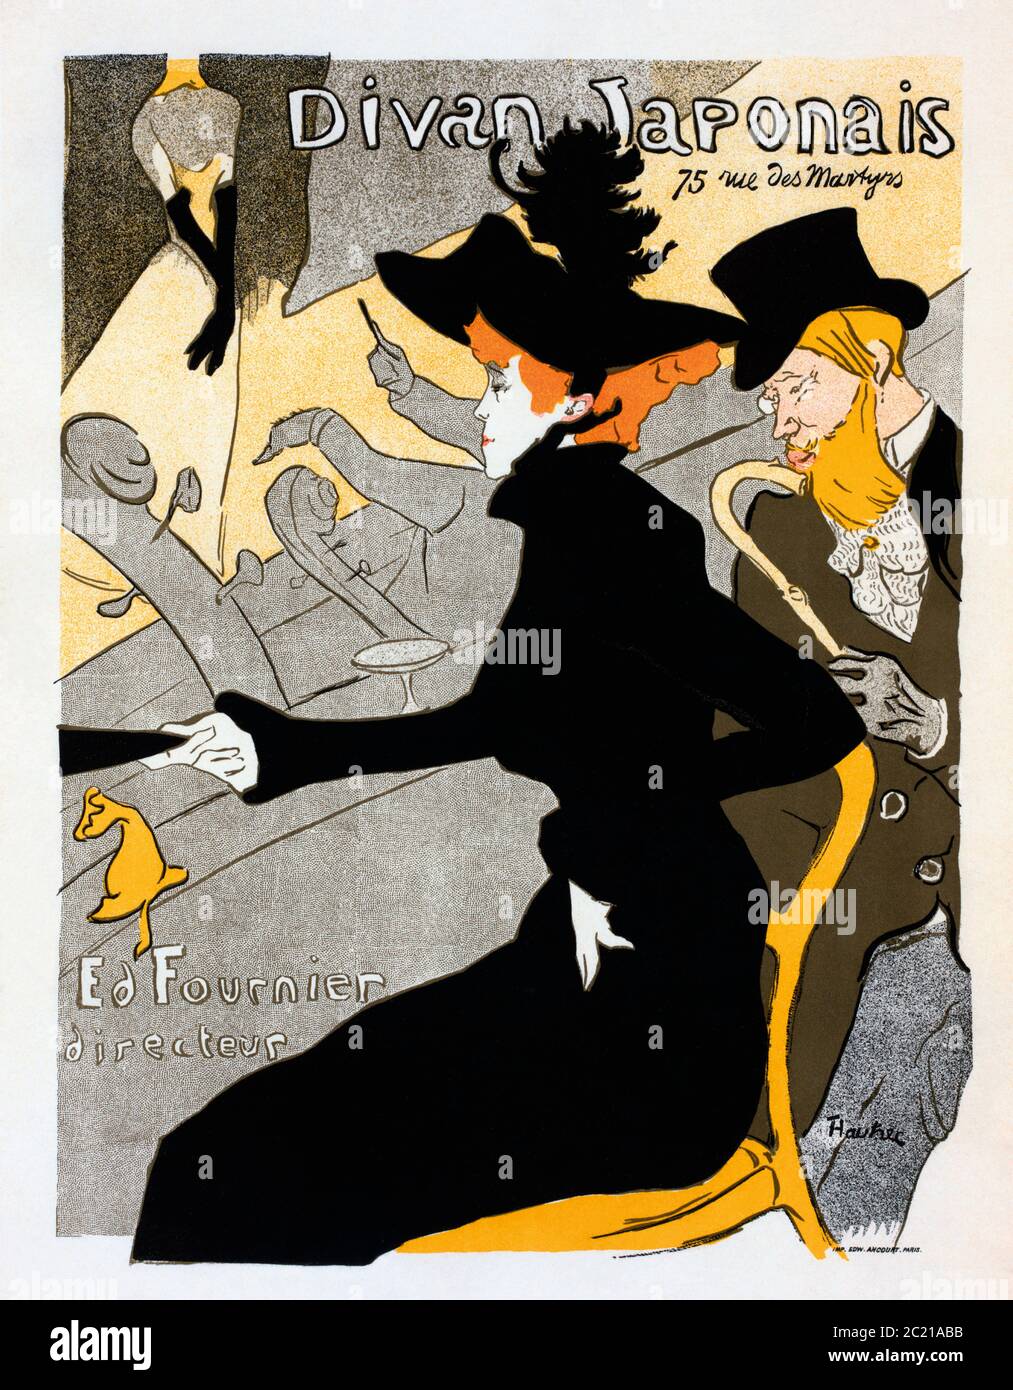 Divan Japonais. Plakat, datiert um 1893-1894 vom französischen Künstler Henri de Toulouse-Lautrec, 1864-1901. Das Plakat wurde als Werbung für das Divan Japonais, ein Pariser Café-Chantant (singendes Café), entworfen. Auf dem Bild sehen die Tänzerin Jane Avril und die Autorin Edouard Dujardin eine Performance von Yvette Guilbert. Stockfoto